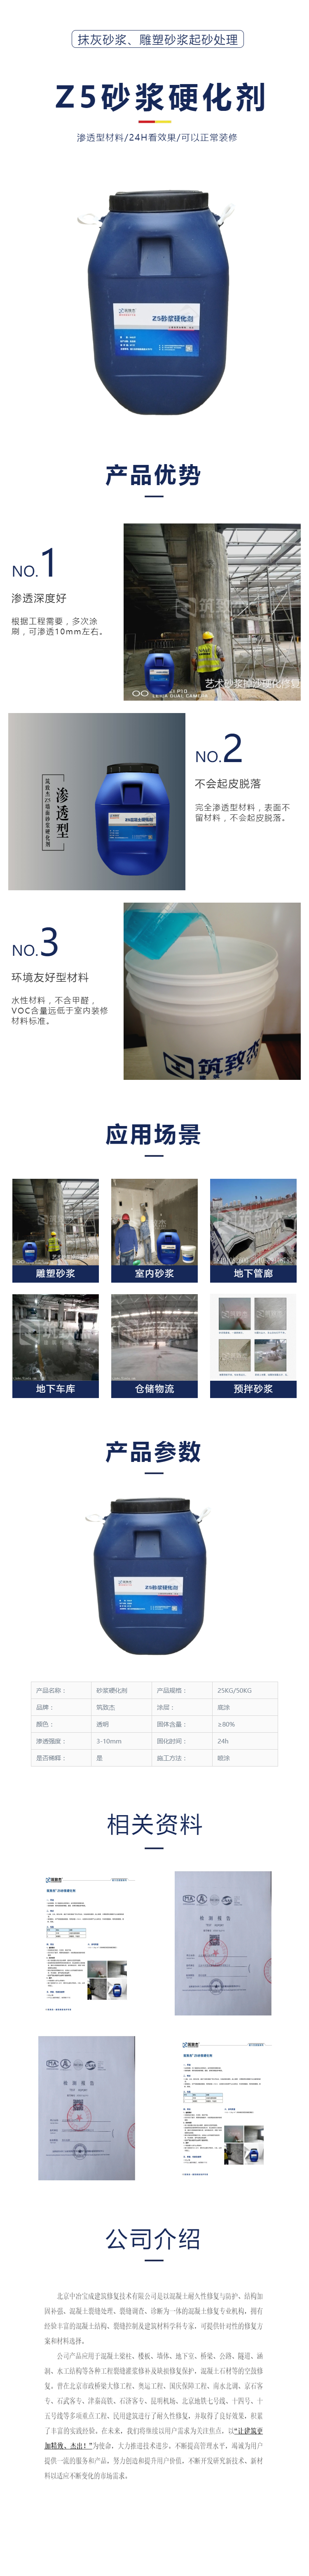 北京中冶Z5起沙处理剂解决装修砂浆起砂、掉砂、强度低